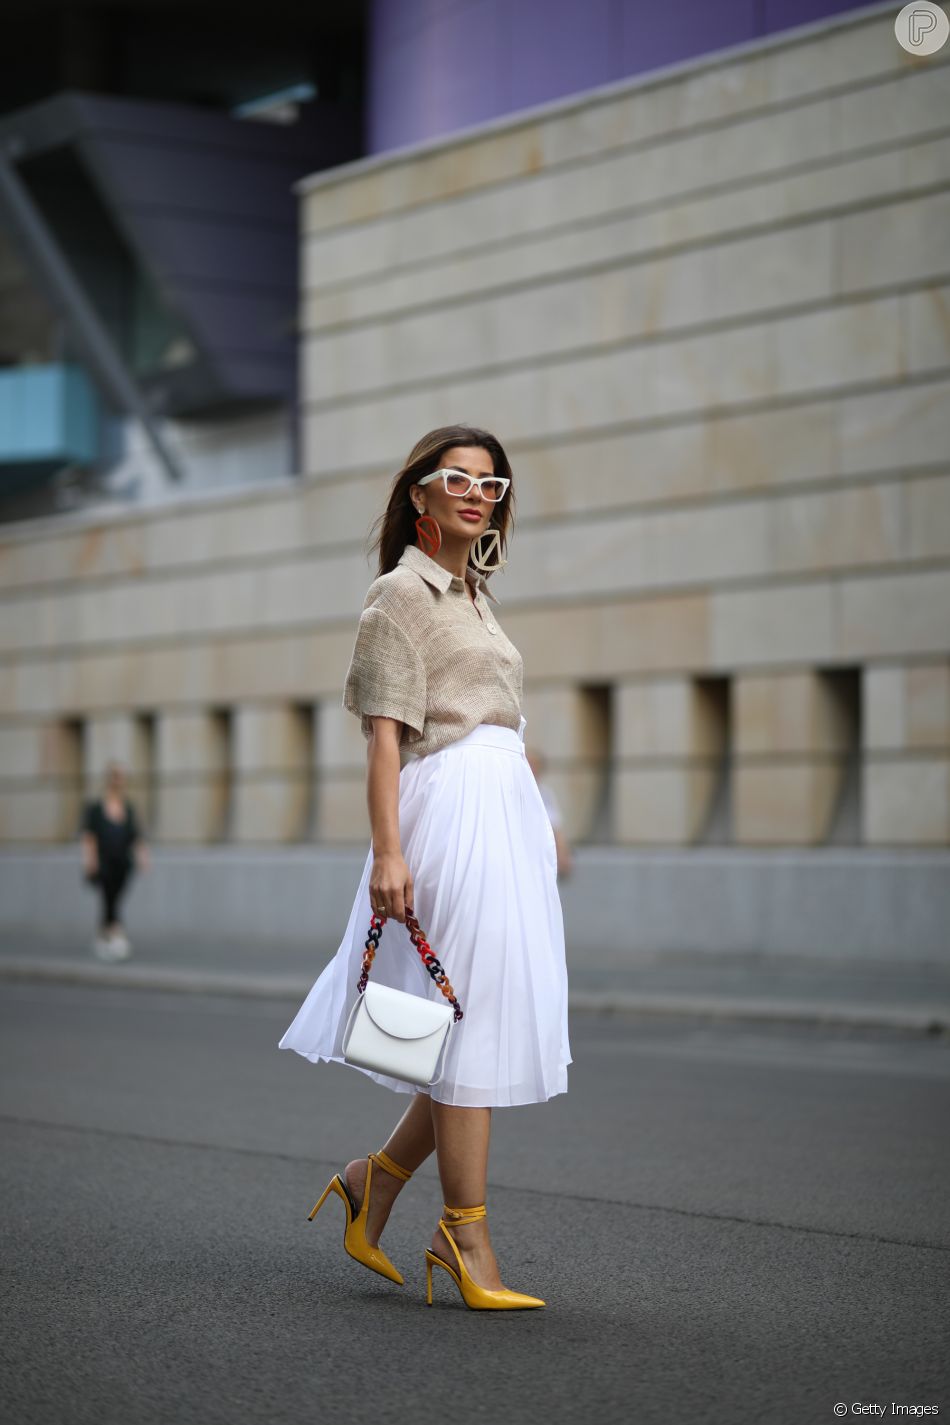 Moda verão 2020: camisa em linho é elegante e pode ser aliada à saia midi da cor branca em office look fresquinho